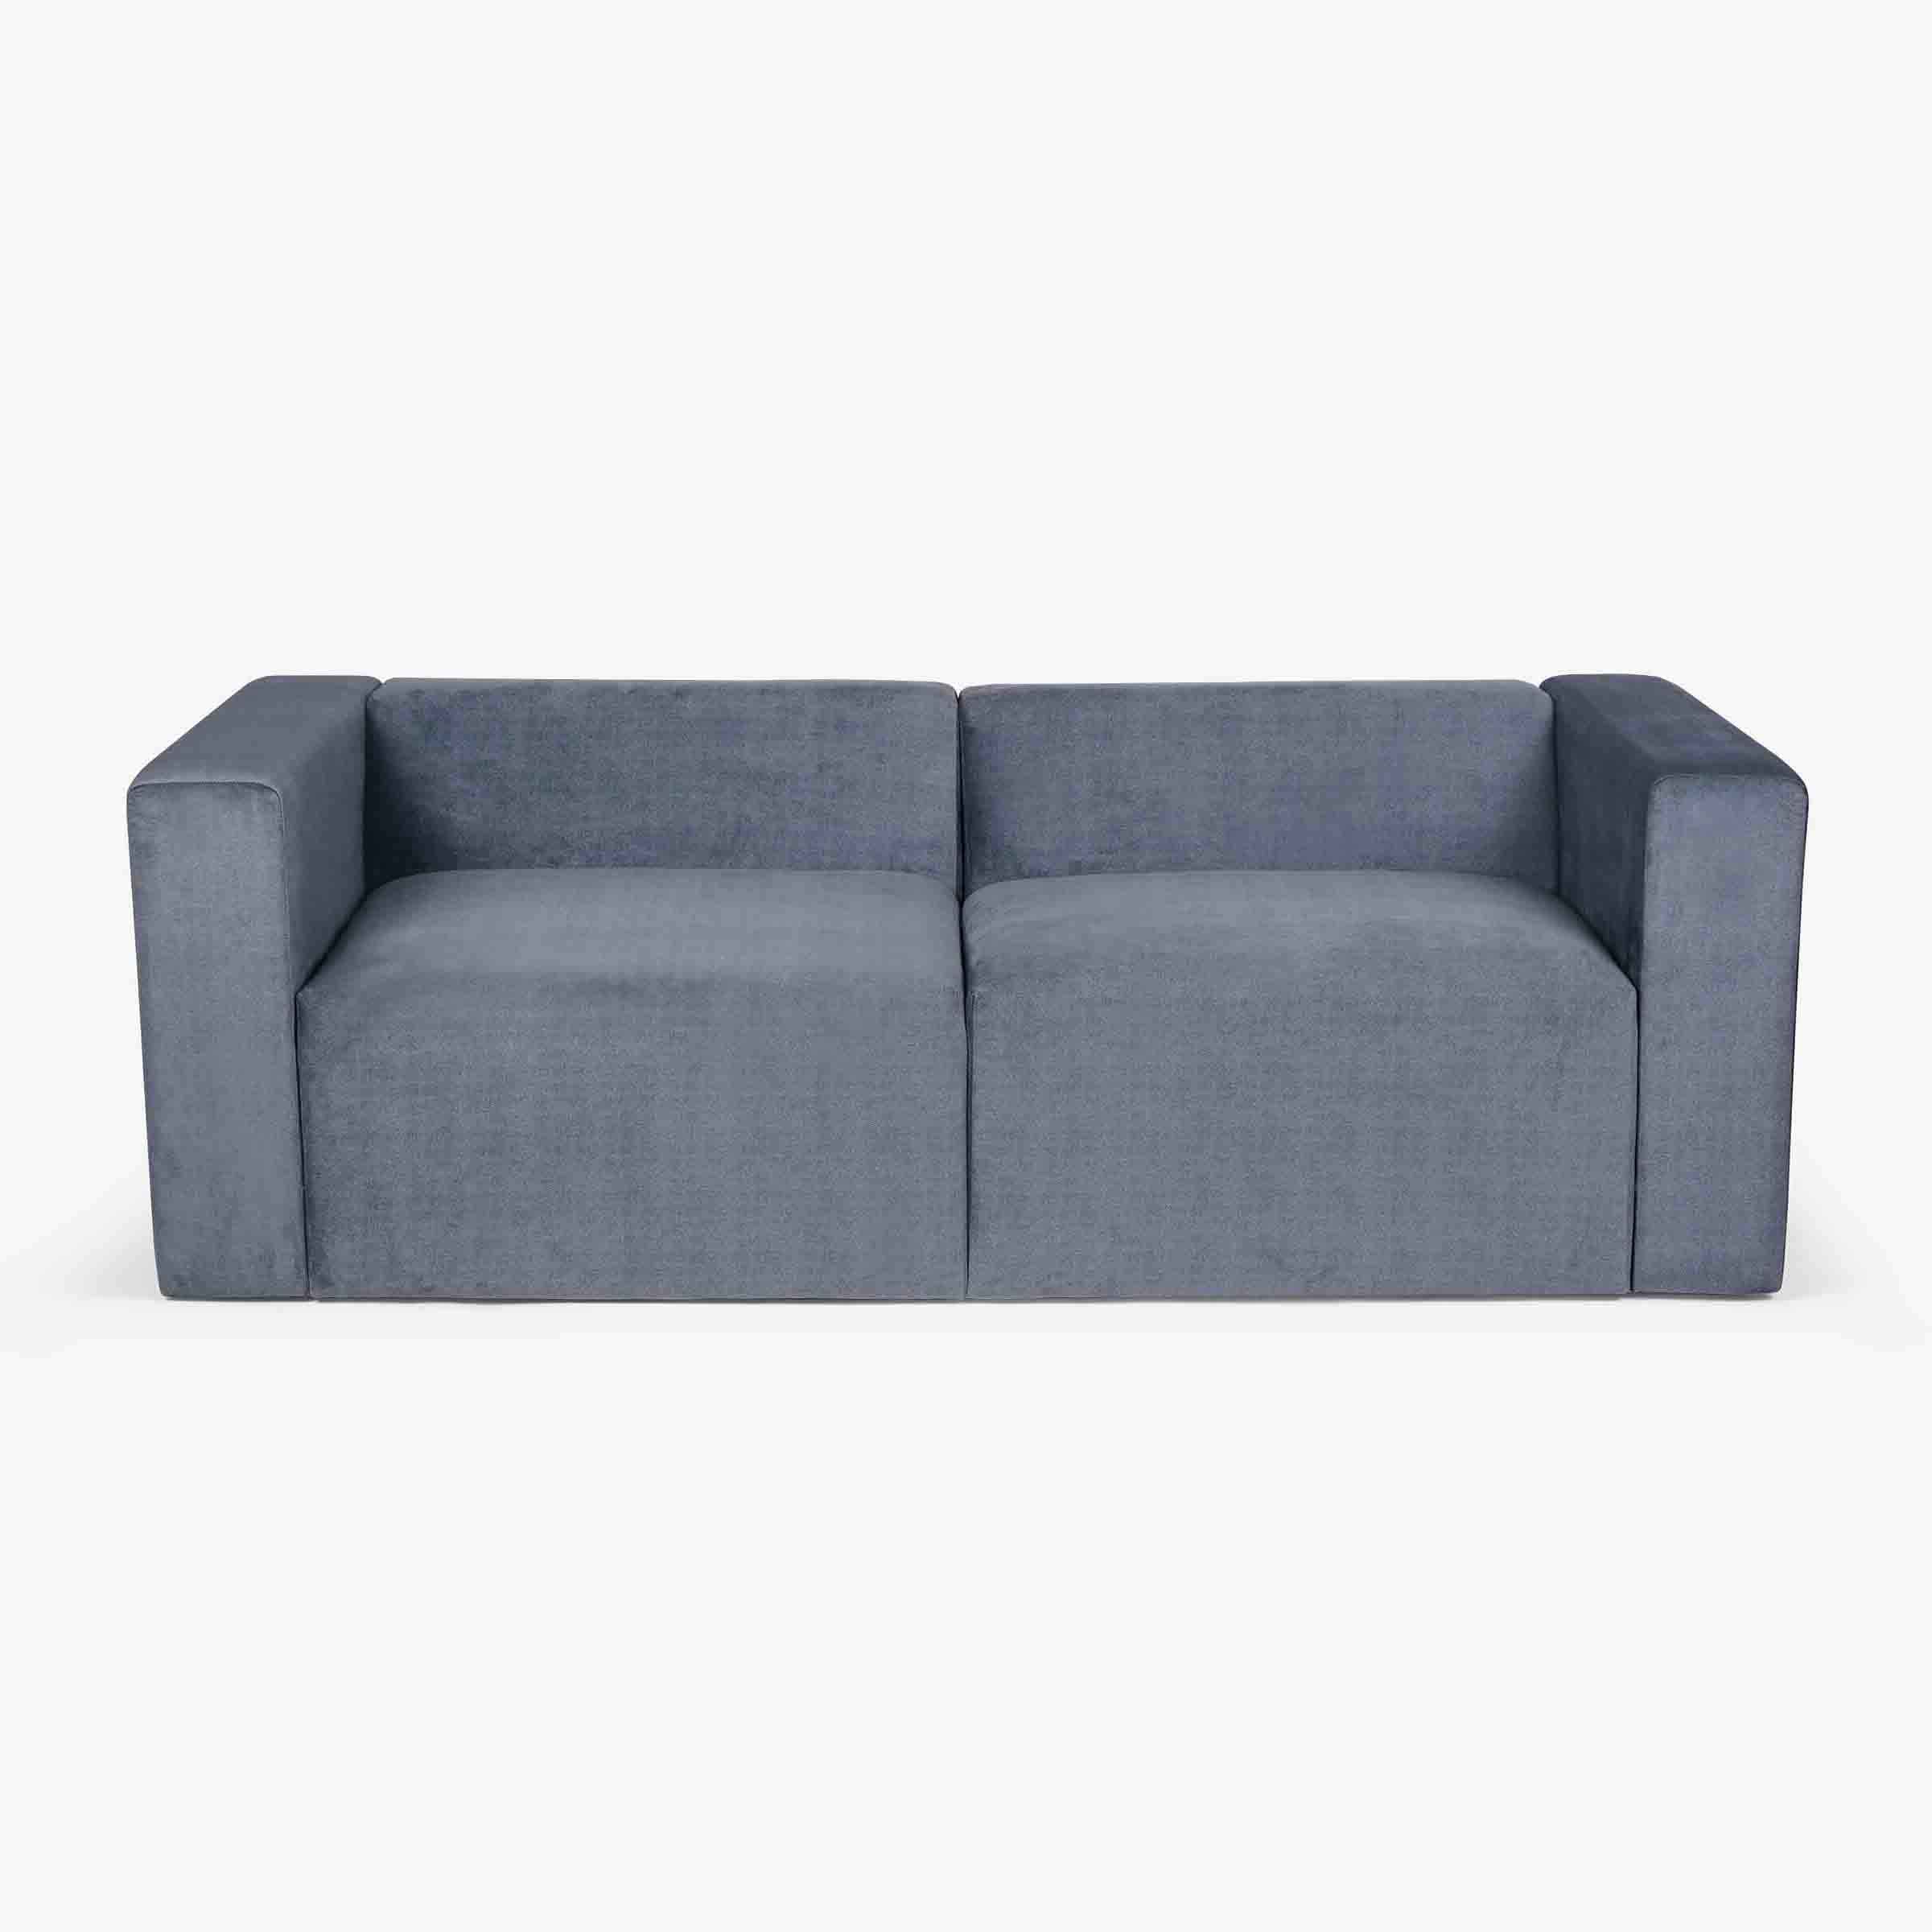 Bicasso Sofa 3 Seater